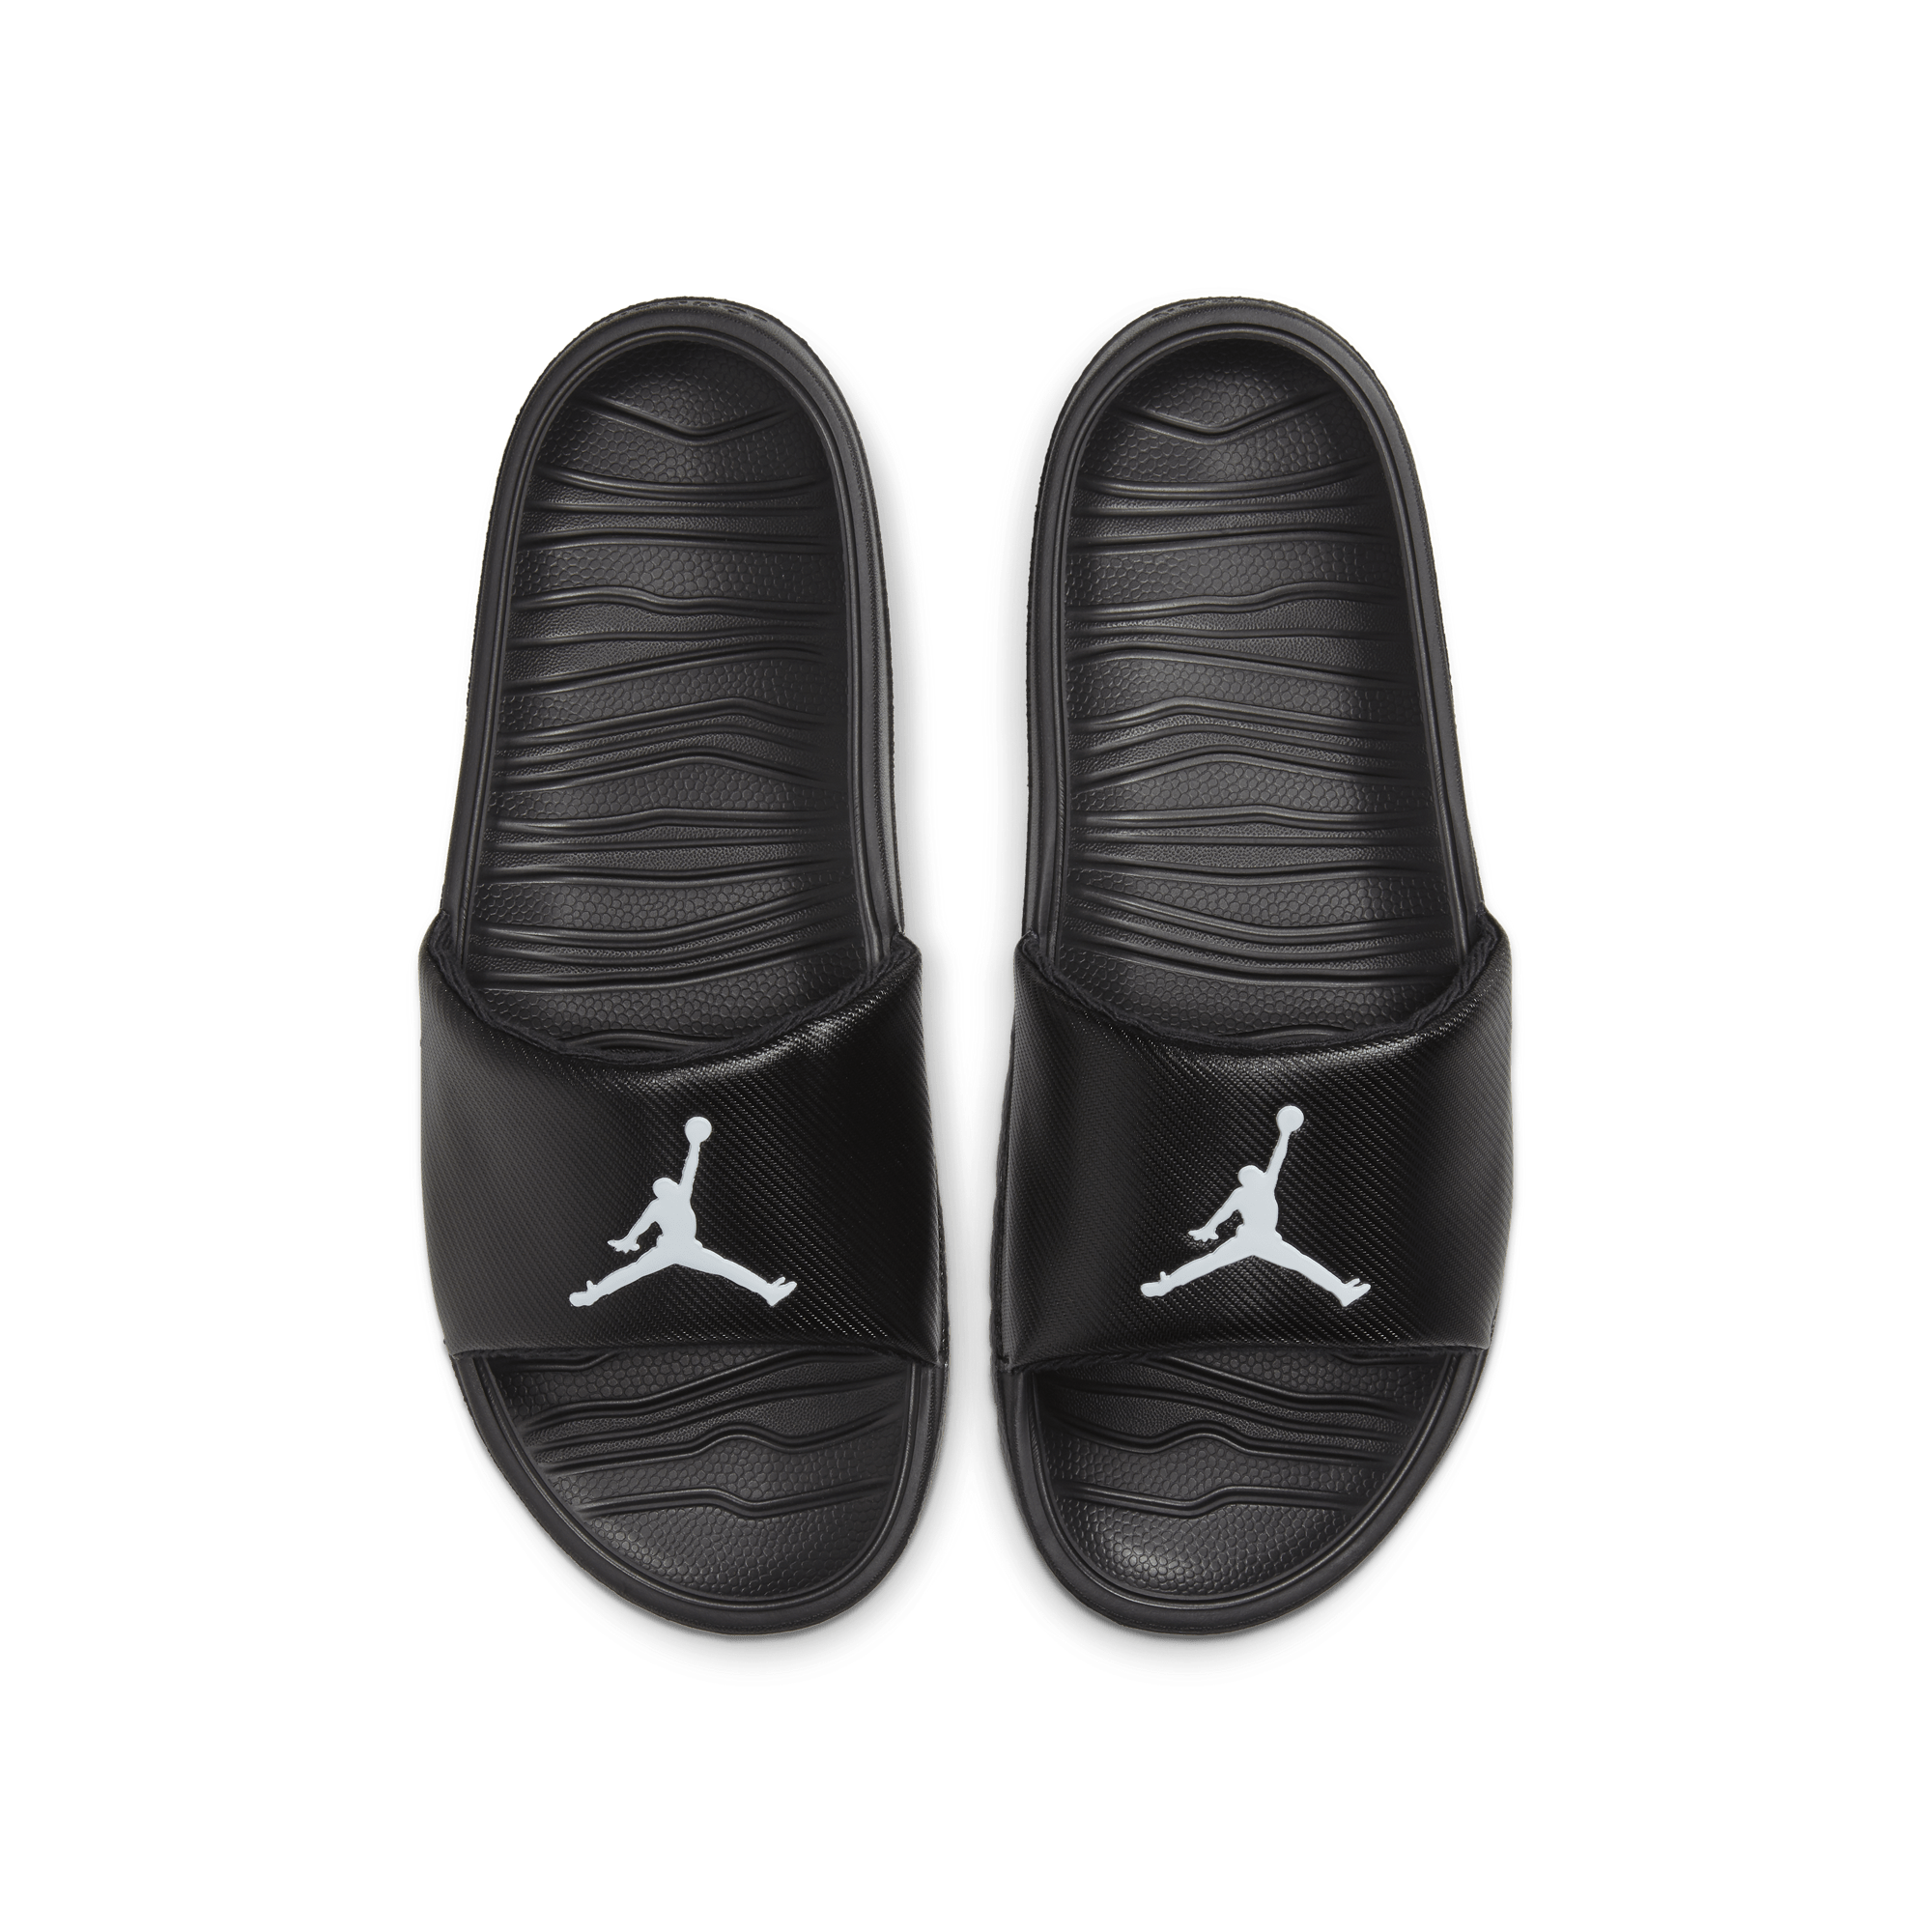 Air Jordan Slides Air Jordan Break Slides - Men's